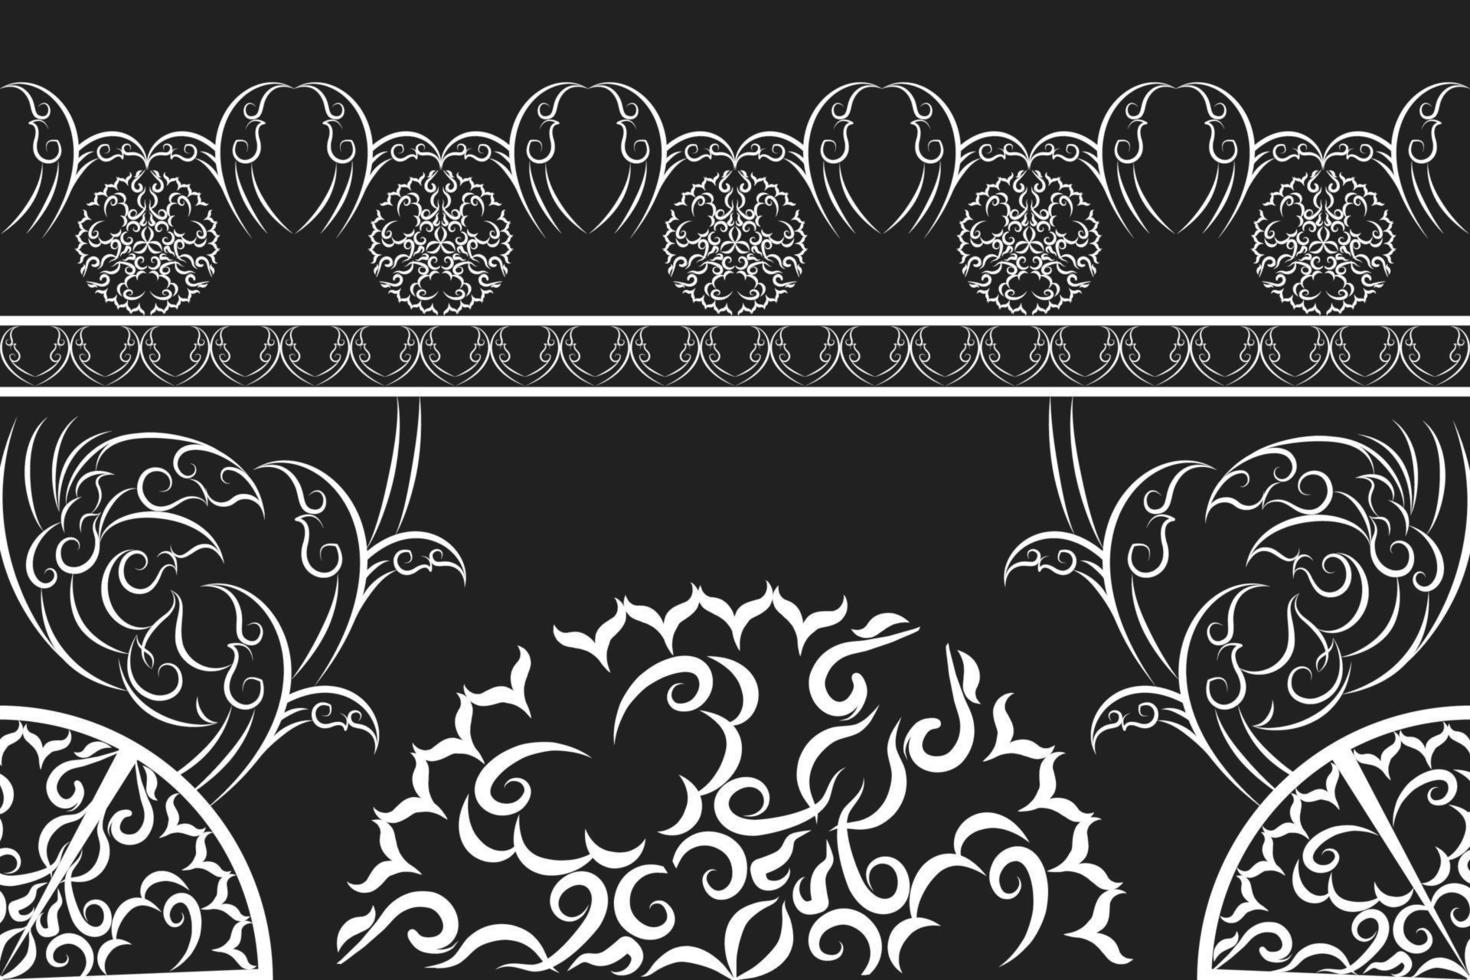 patrón de tela étnica diseñado a partir de formas geométricas patrón de tela de estilo étnico asiático utilizado para la decoración del hogar, trabajo de alfombras, uso interior y exterior. vector